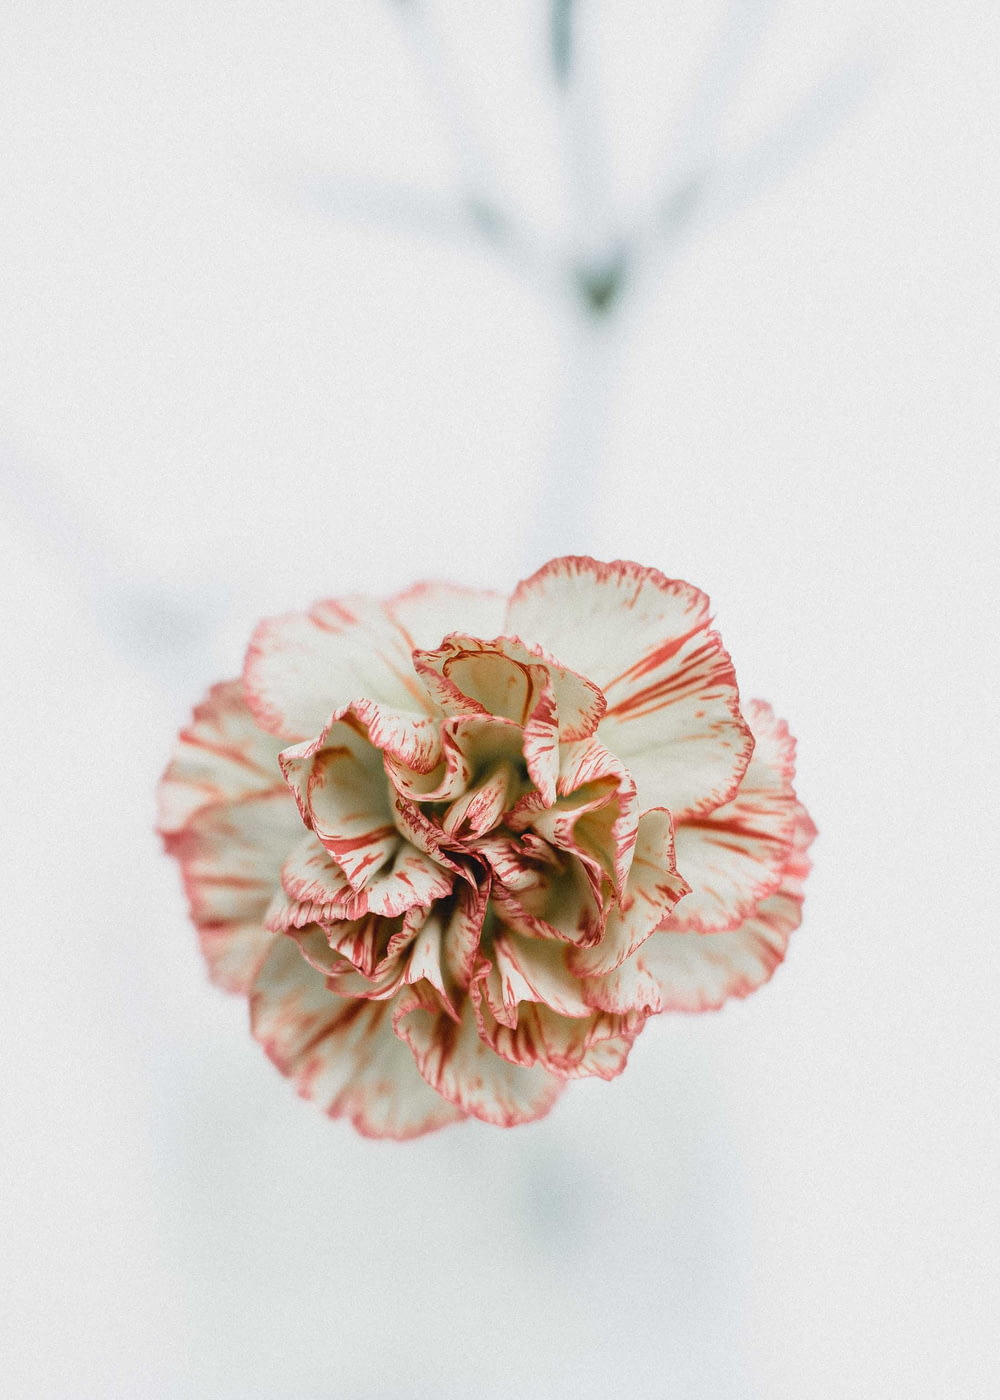 Photographie macro de fleurs rouges et blanches